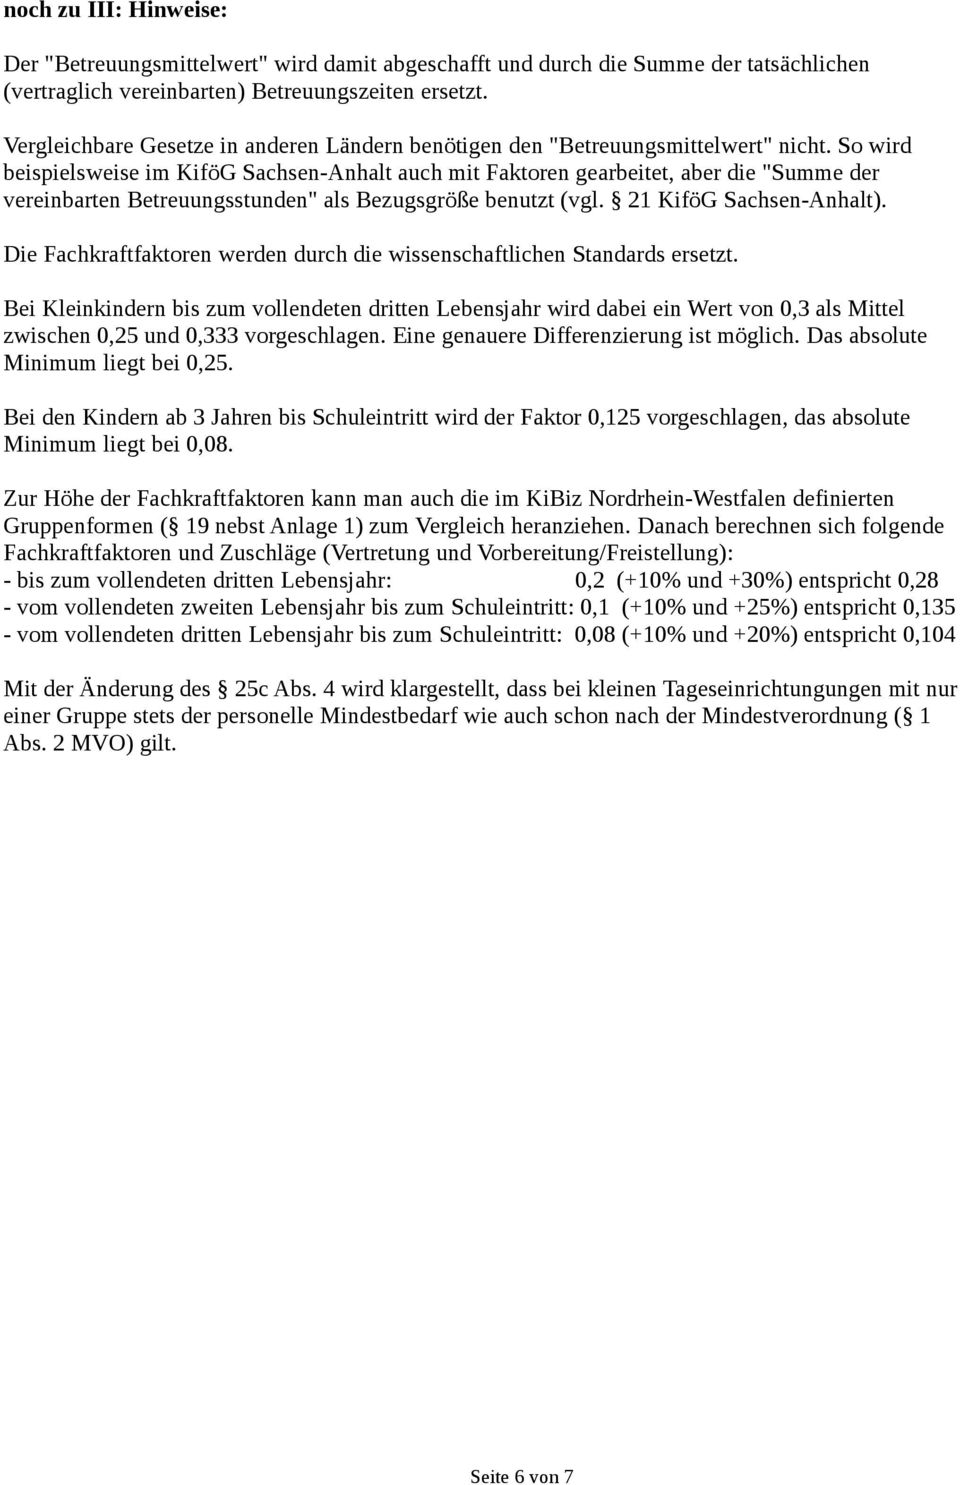 So wird beispielsweise im KiföG Sachsen-Anhalt auch mit Faktoren gearbeitet, aber die "Summe der vereinbarten Betreuungsstunden" als Bezugsgröße benutzt (vgl. 21 KiföG Sachsen-Anhalt).